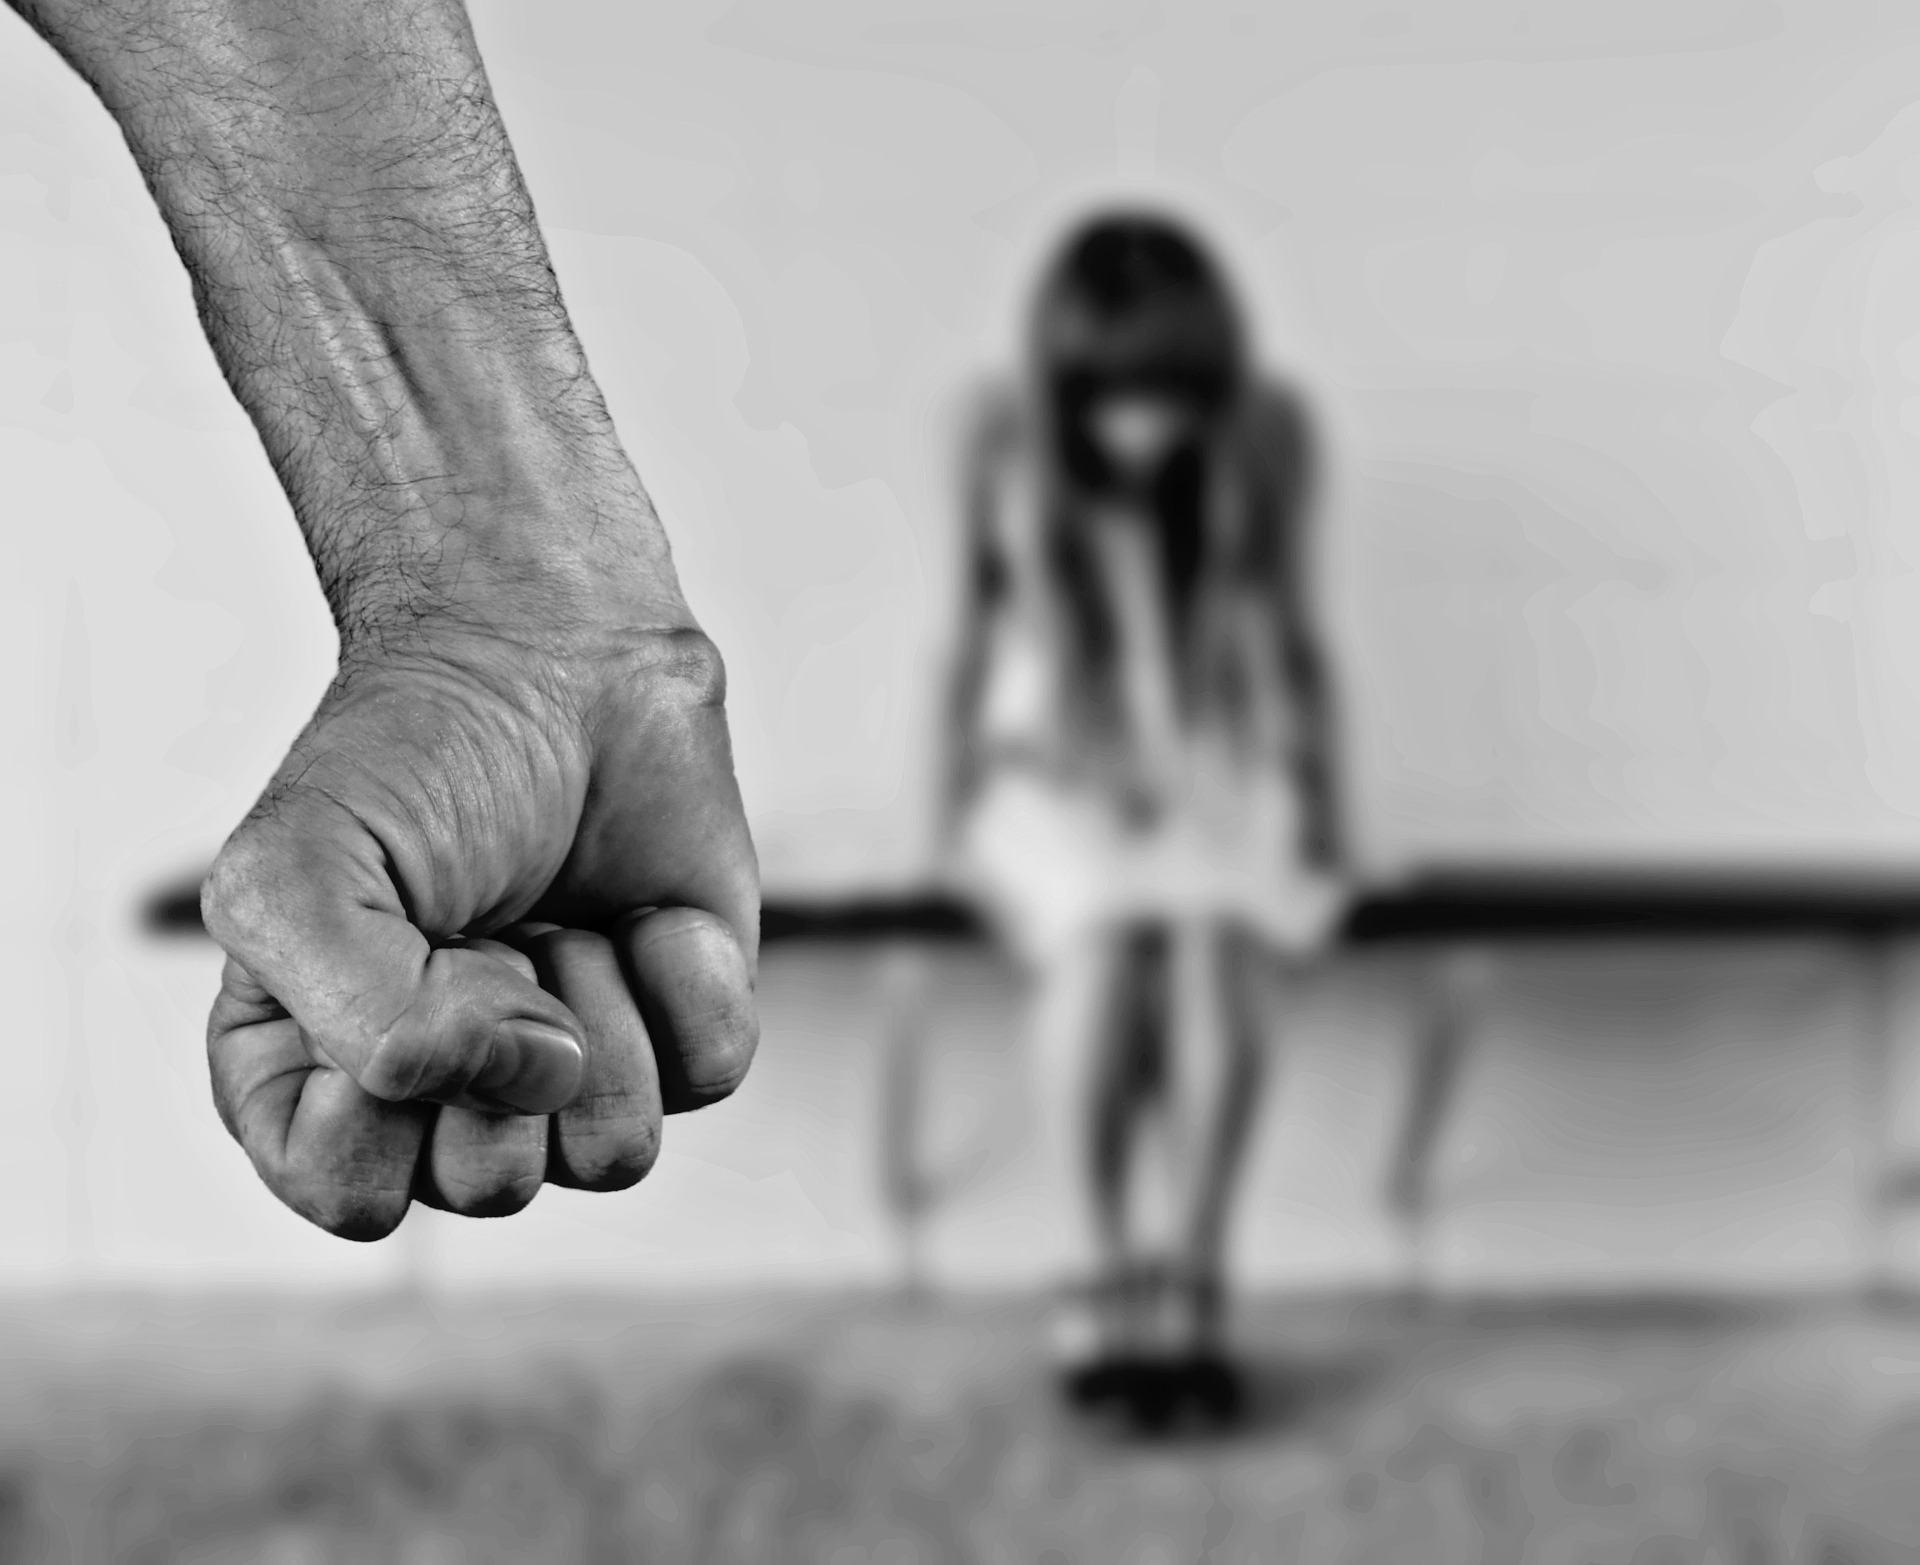 Mujer que prostituyó a su hija por 11 años es sentenciada a 10 años de prisión en Edomex